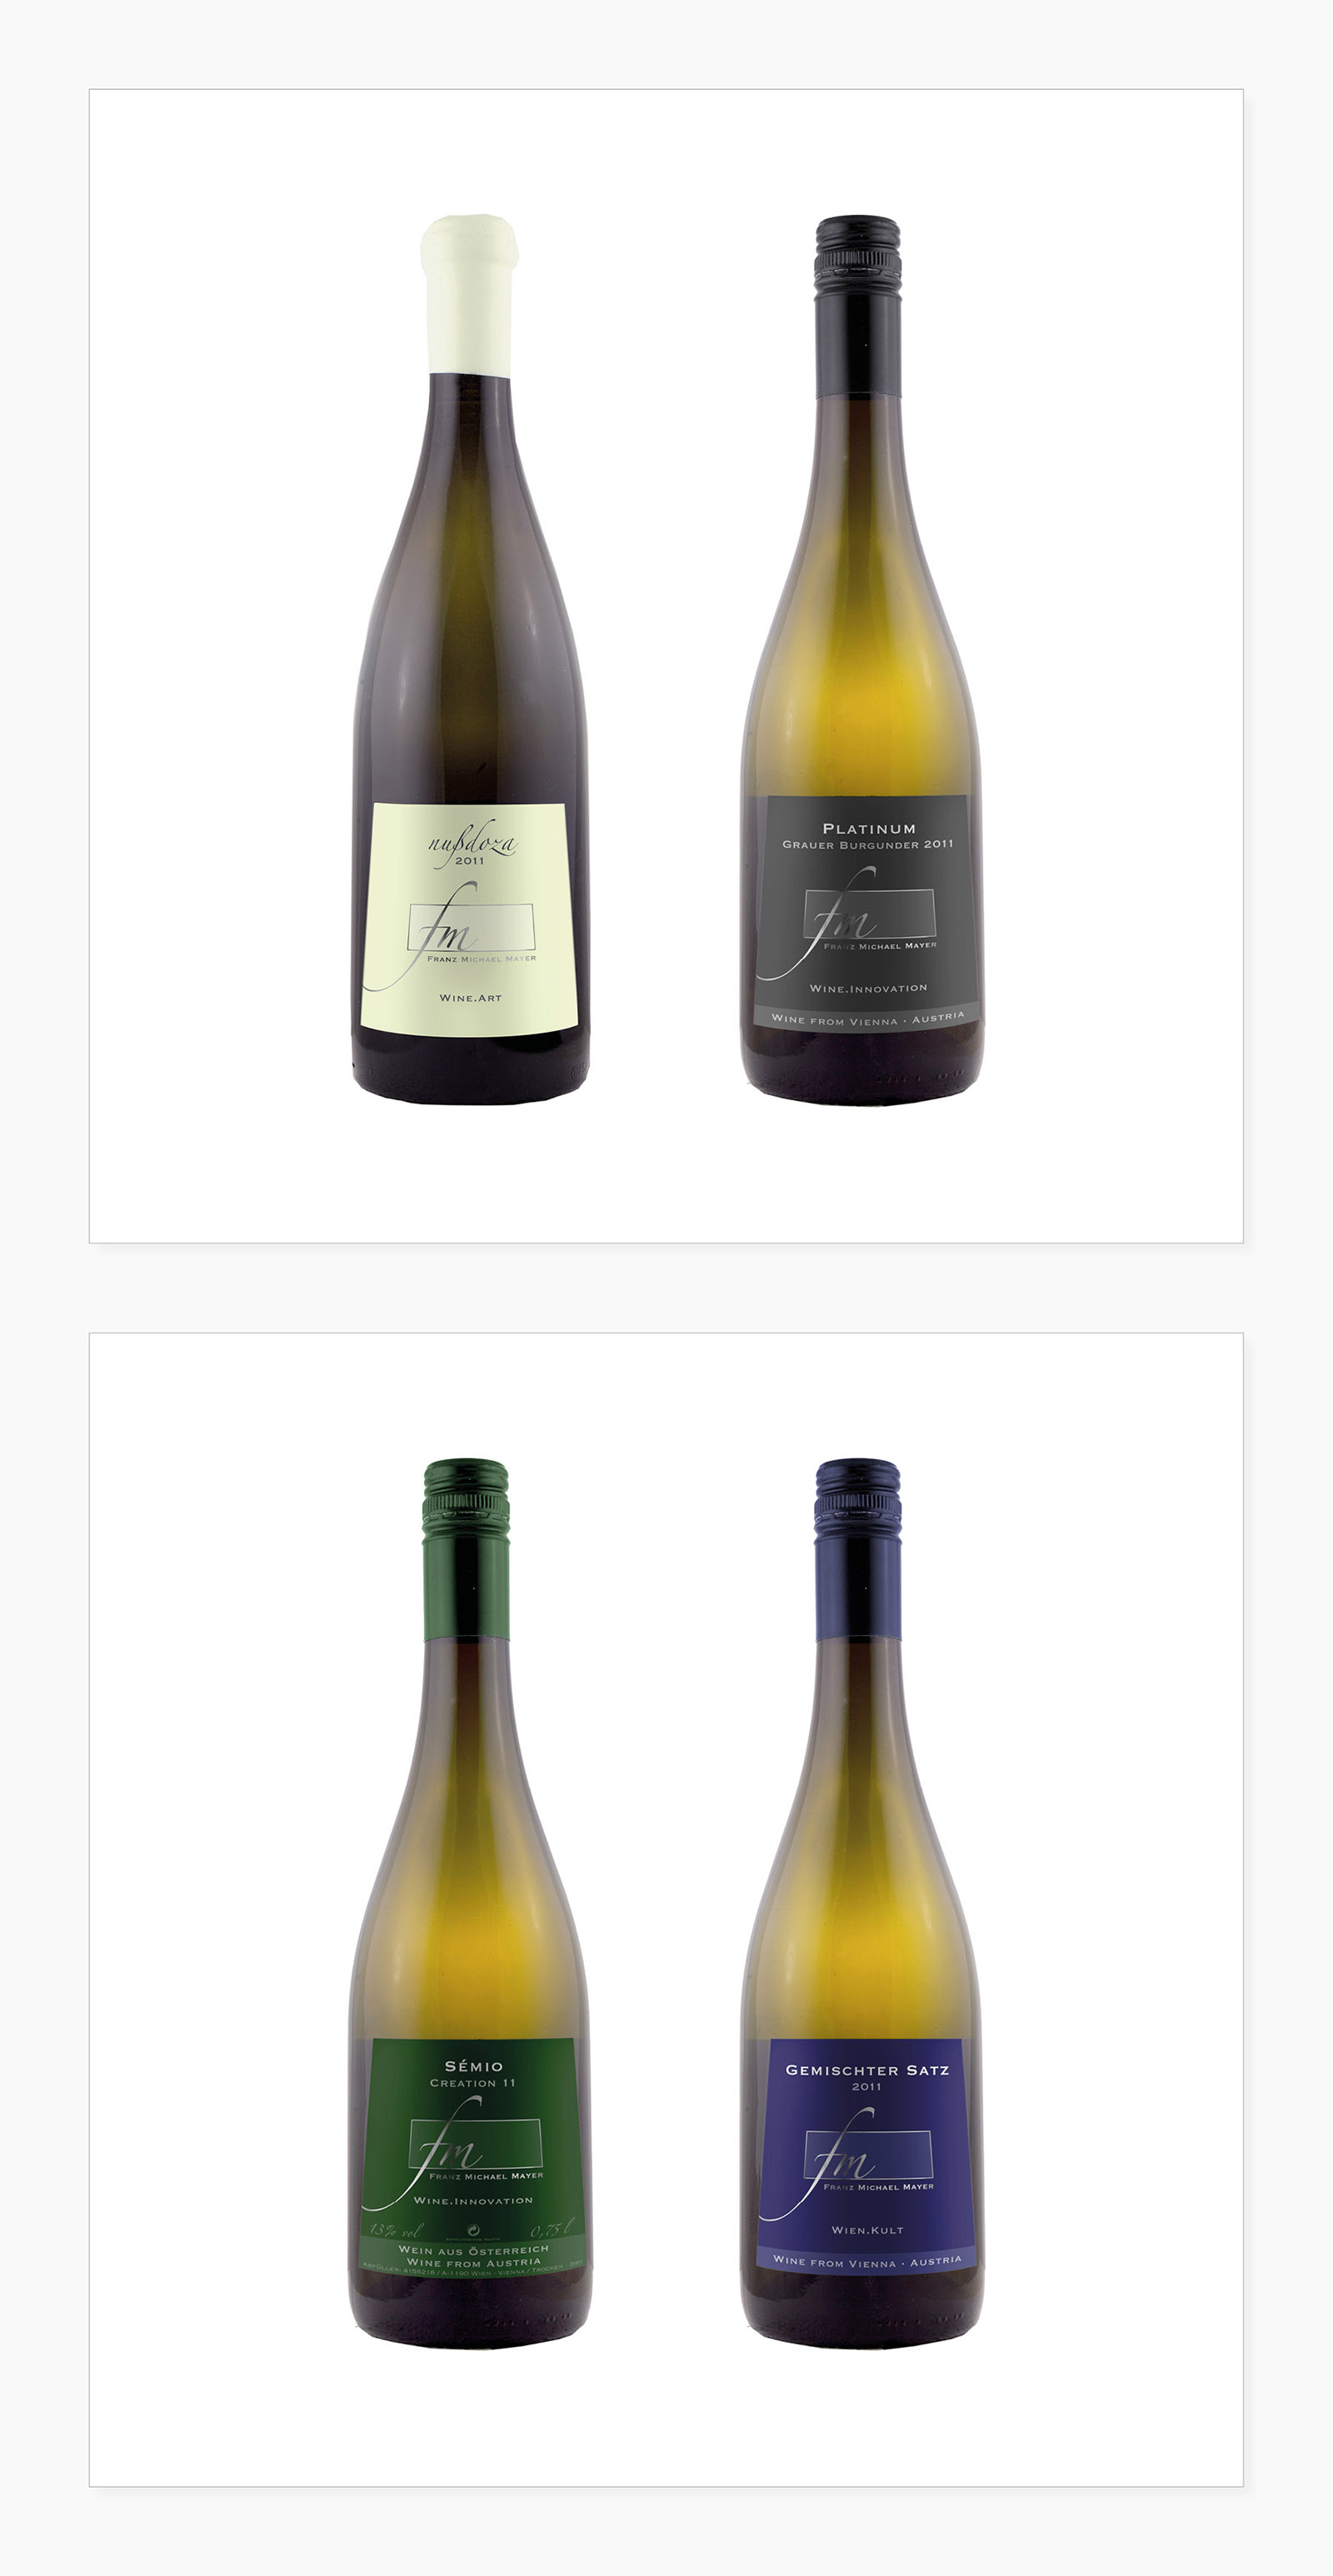 Weinetiketten (Nußdoza: Kategorie "Wine.Art", Platinum: Kategorie "Wine.Innovation", Semio: Kategorie "Wine.Innovation", Gemischter Satz: Kategorie "Wien Kult")